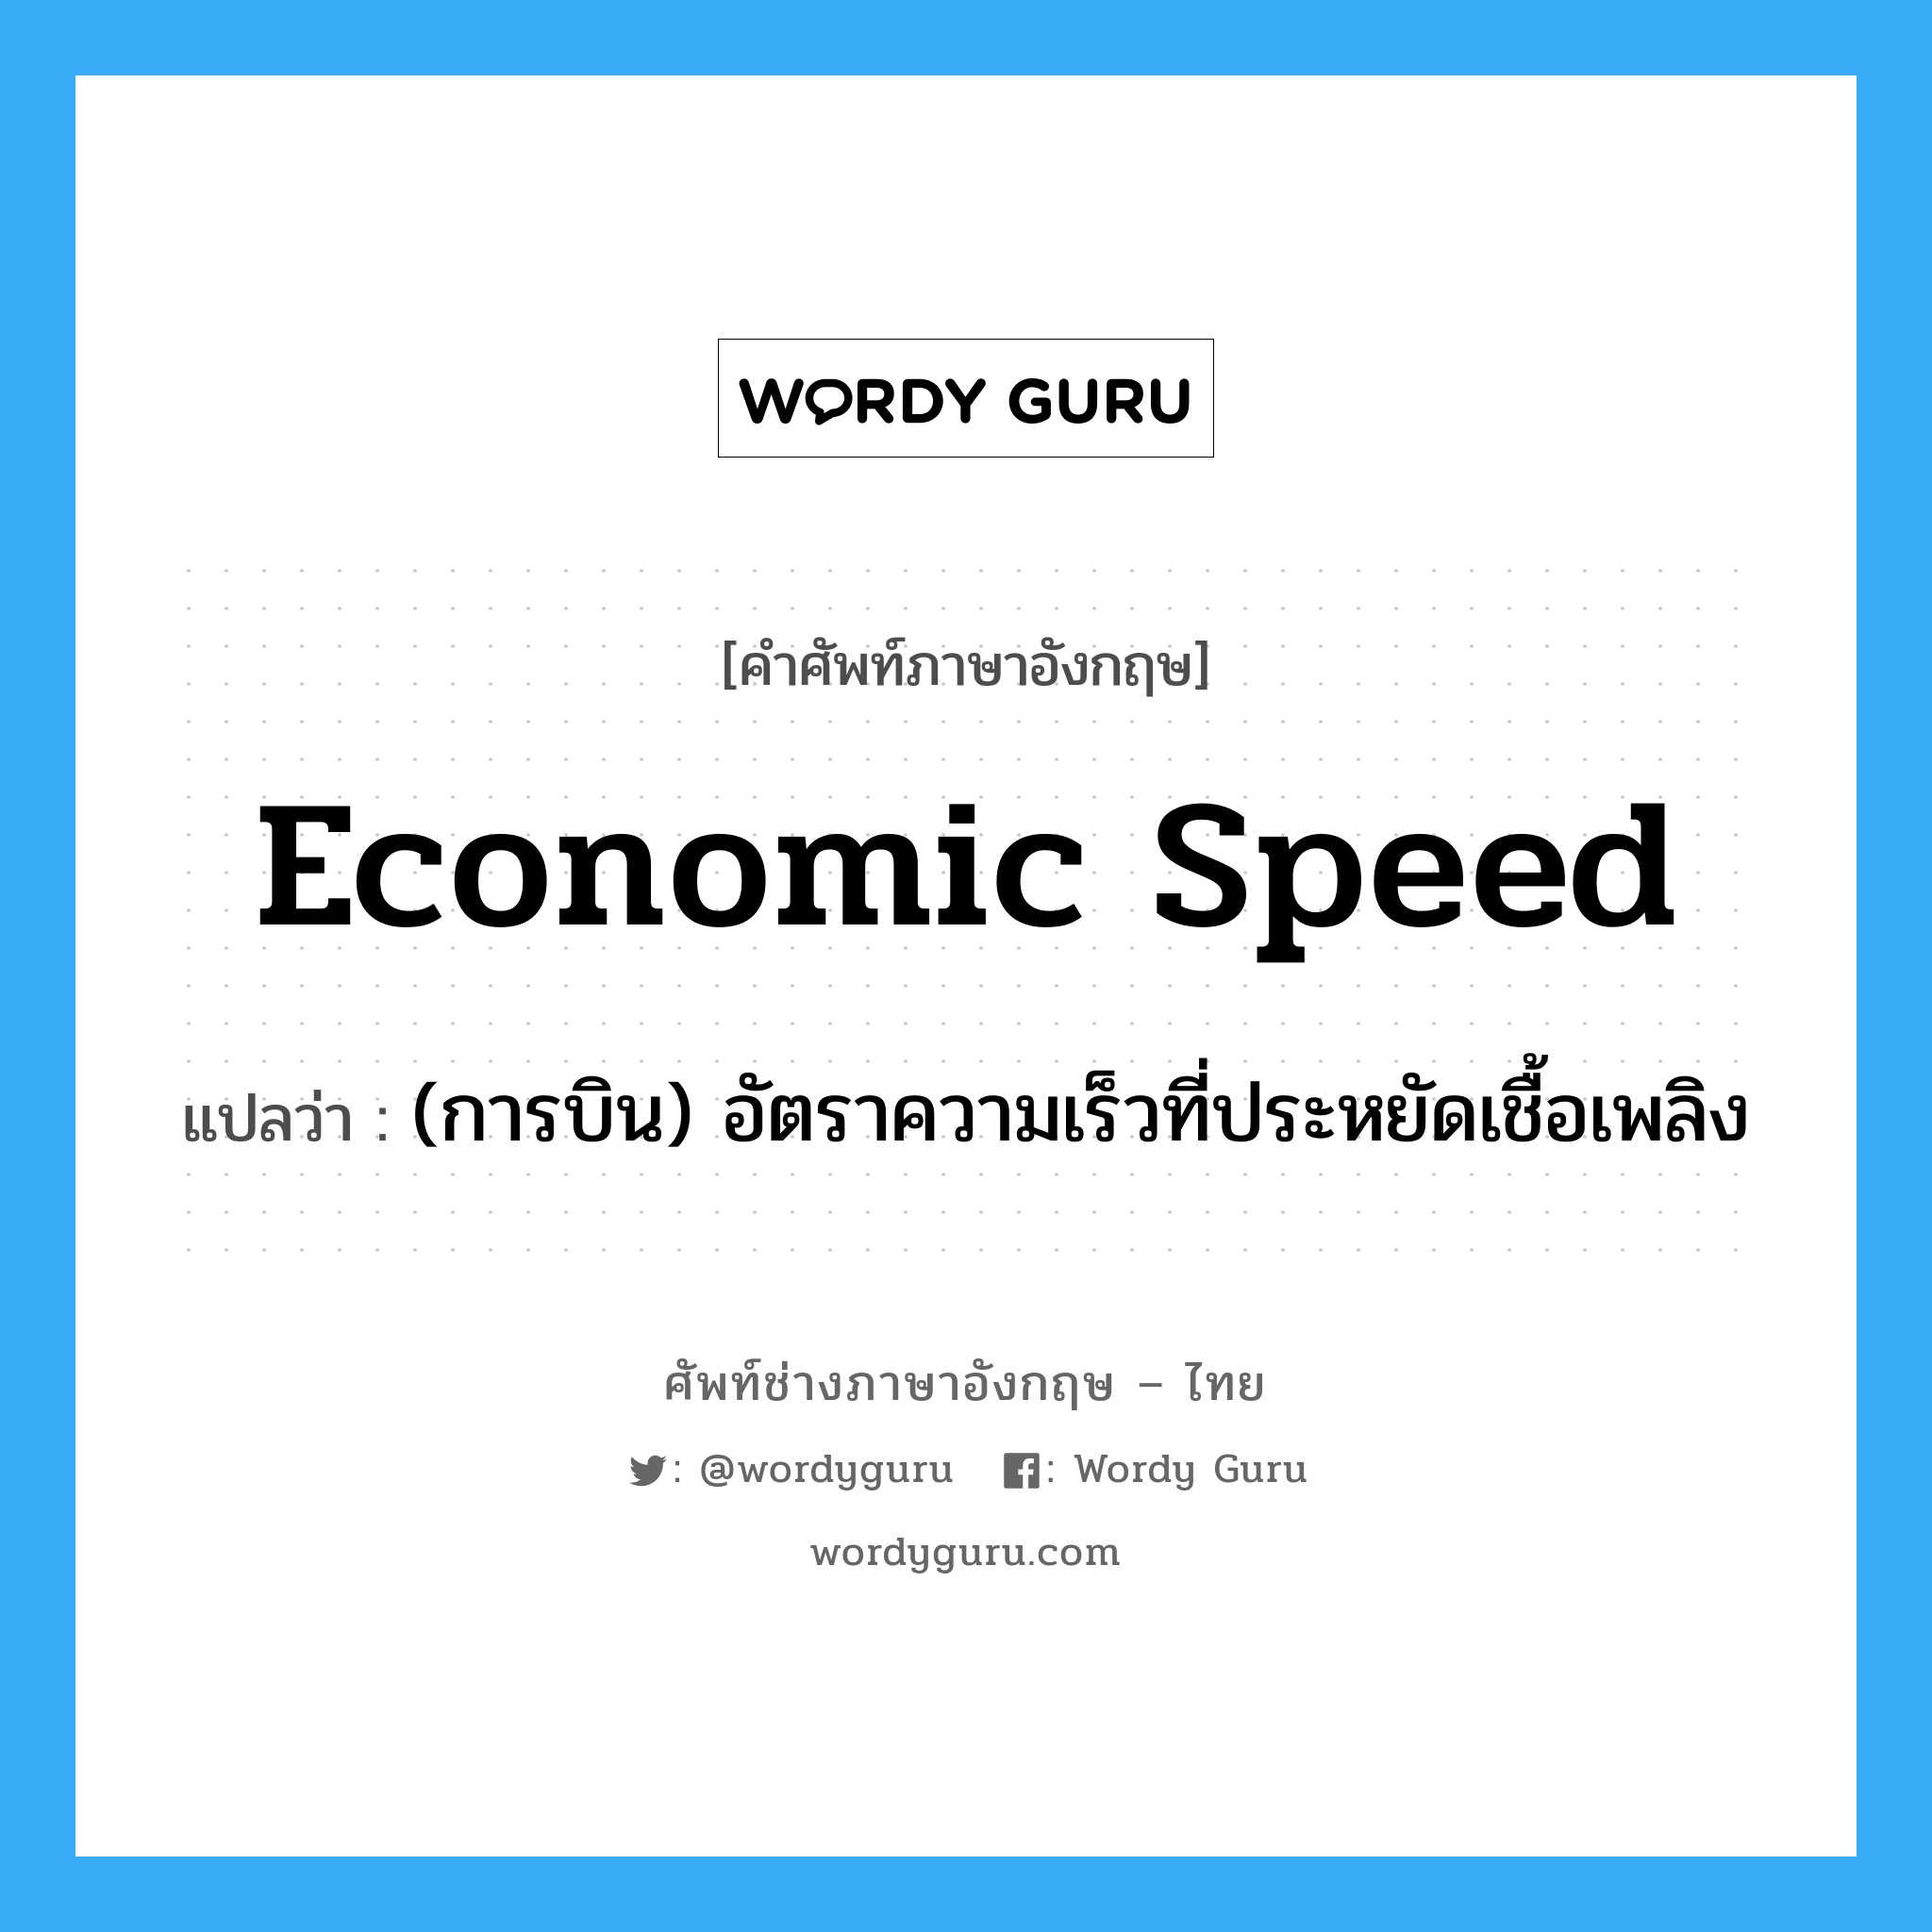 economic speed แปลว่า?, คำศัพท์ช่างภาษาอังกฤษ - ไทย economic speed คำศัพท์ภาษาอังกฤษ economic speed แปลว่า (การบิน) อัตราความเร็วที่ประหยัดเชื้อเพลิง